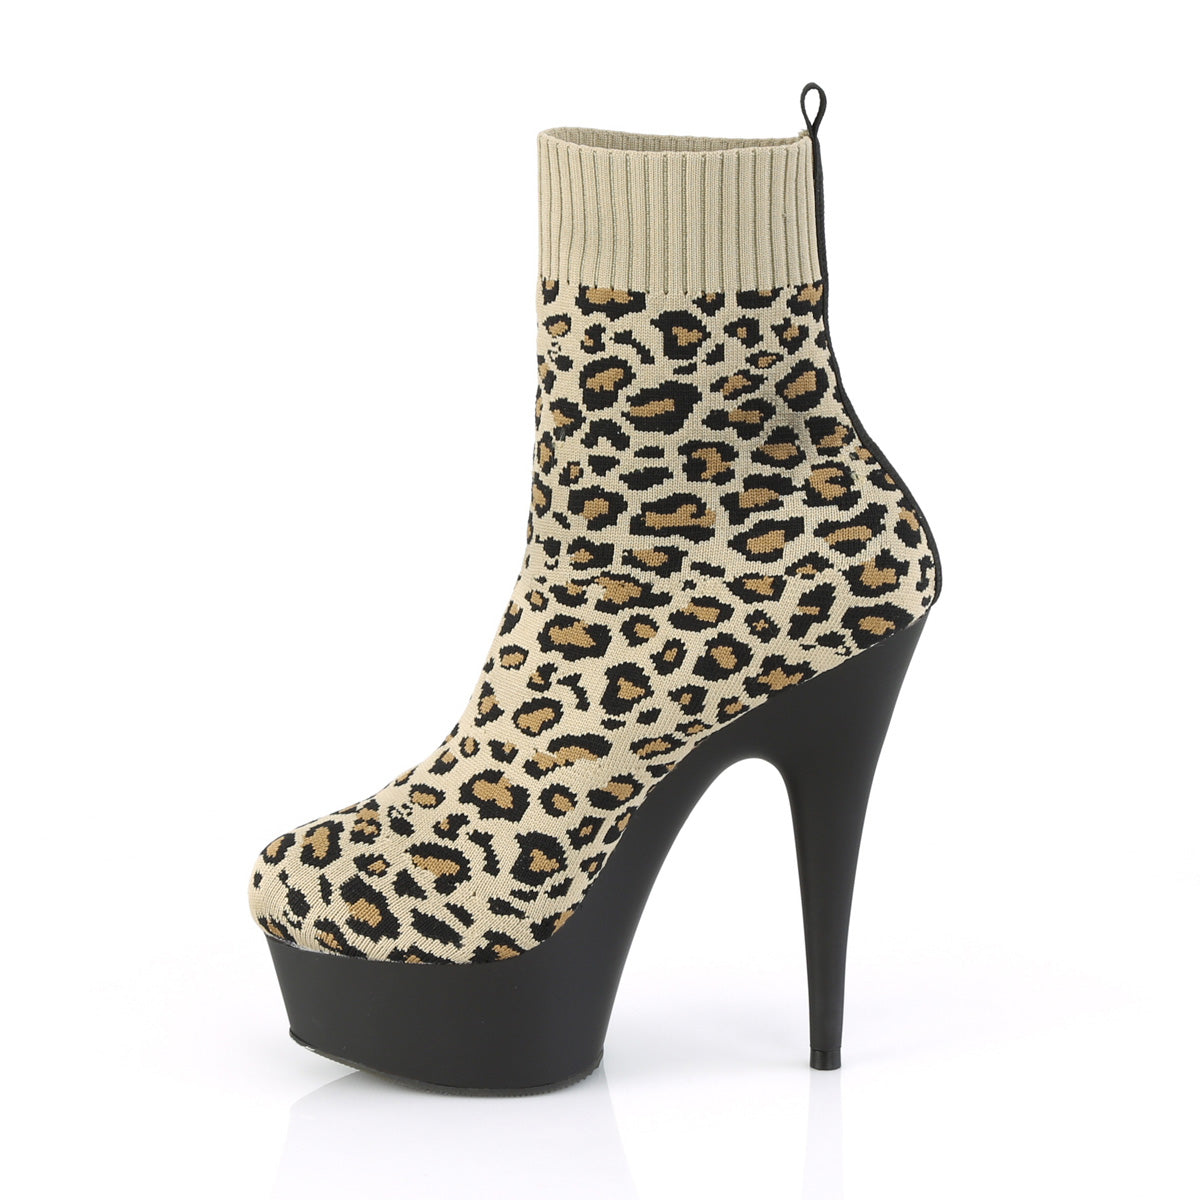 DELIGHT-1002LP 6" Heel Tan Leopard Print Pole Dancer Shoes-Pleaser- Sexy Shoes Pole Dance Heels